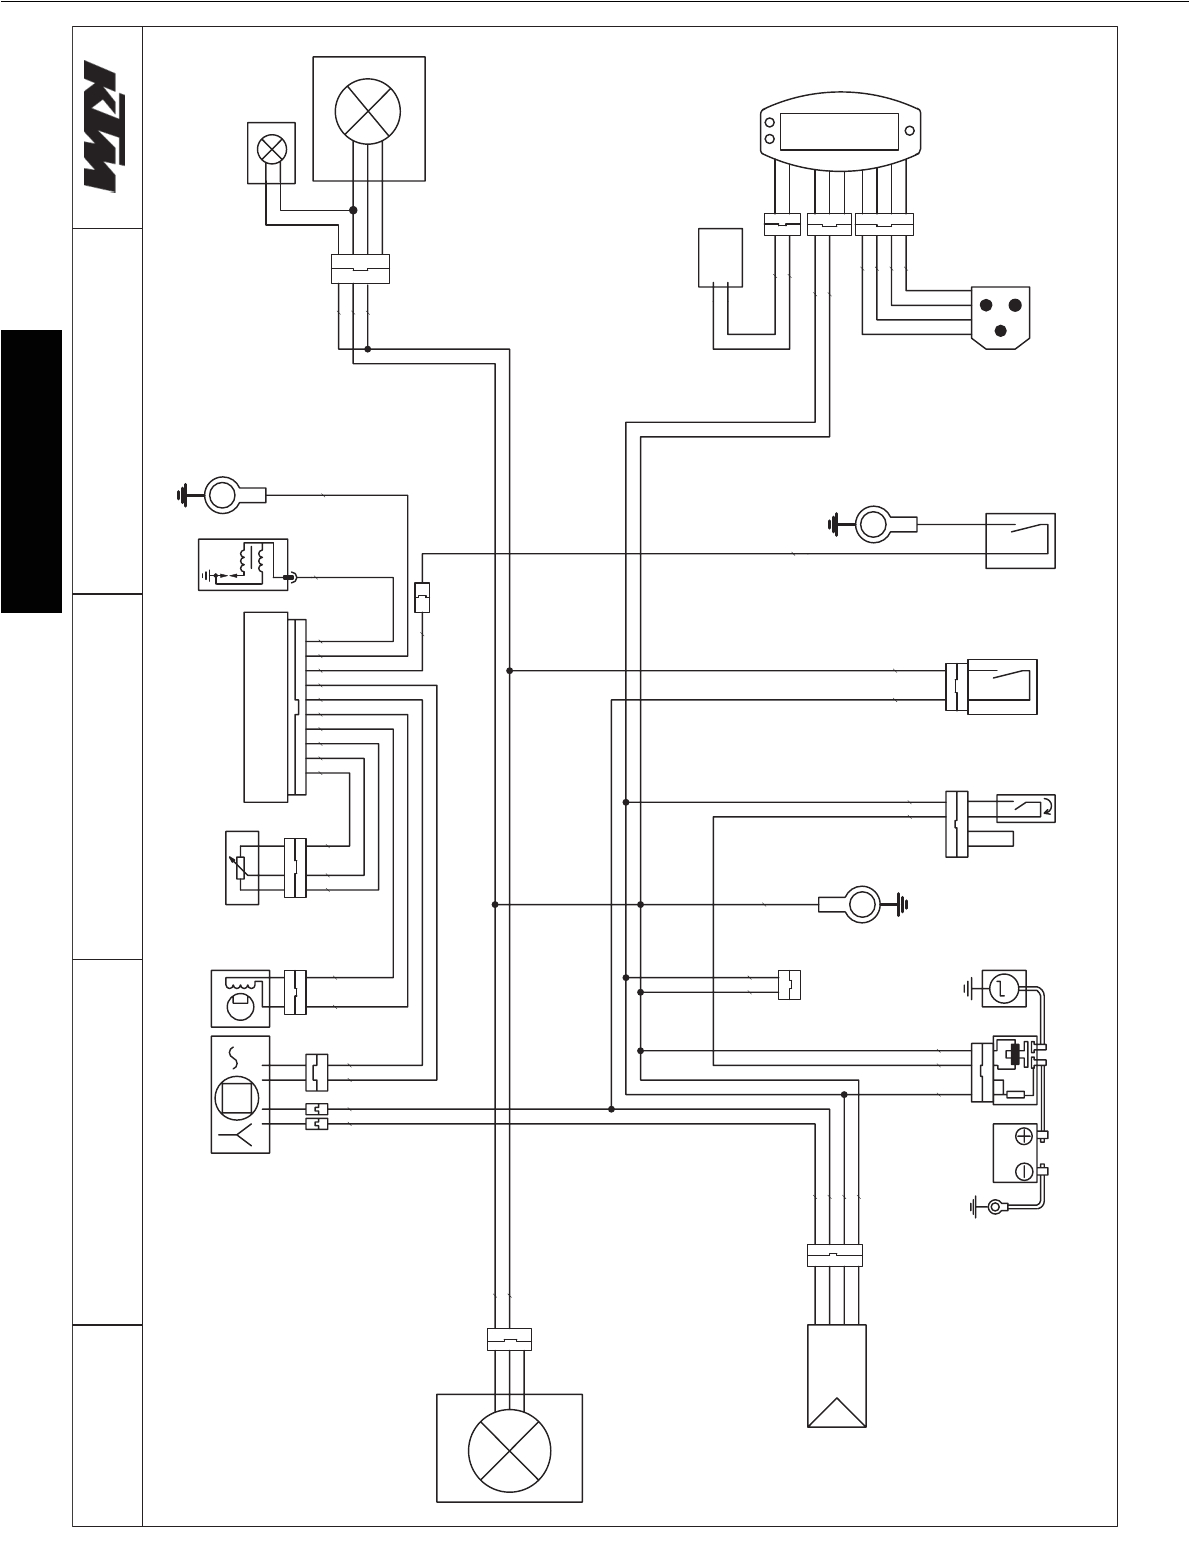 ktm freeride 250 wiring diagram wiring diagram name wiring diagram ktm freeride 250r ktm 250 wire